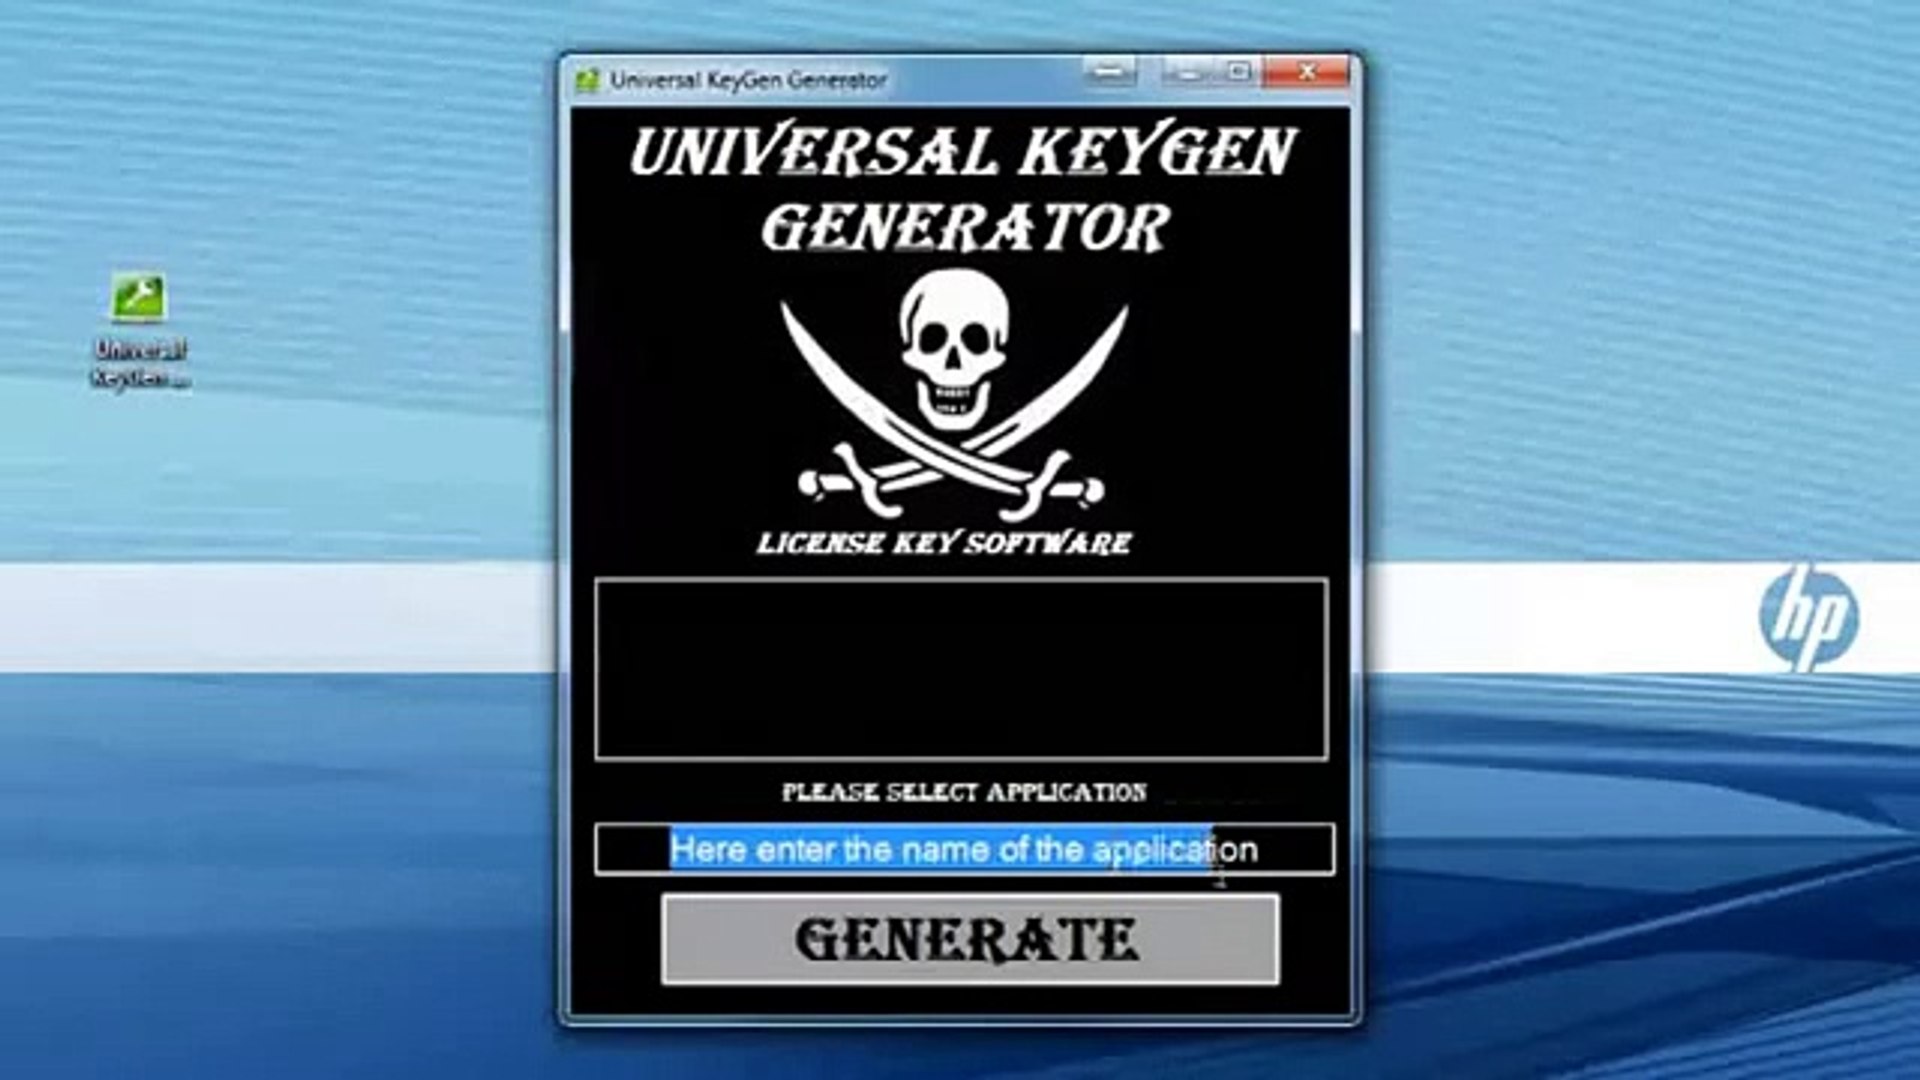 Poweriso 5.8 Key Generator